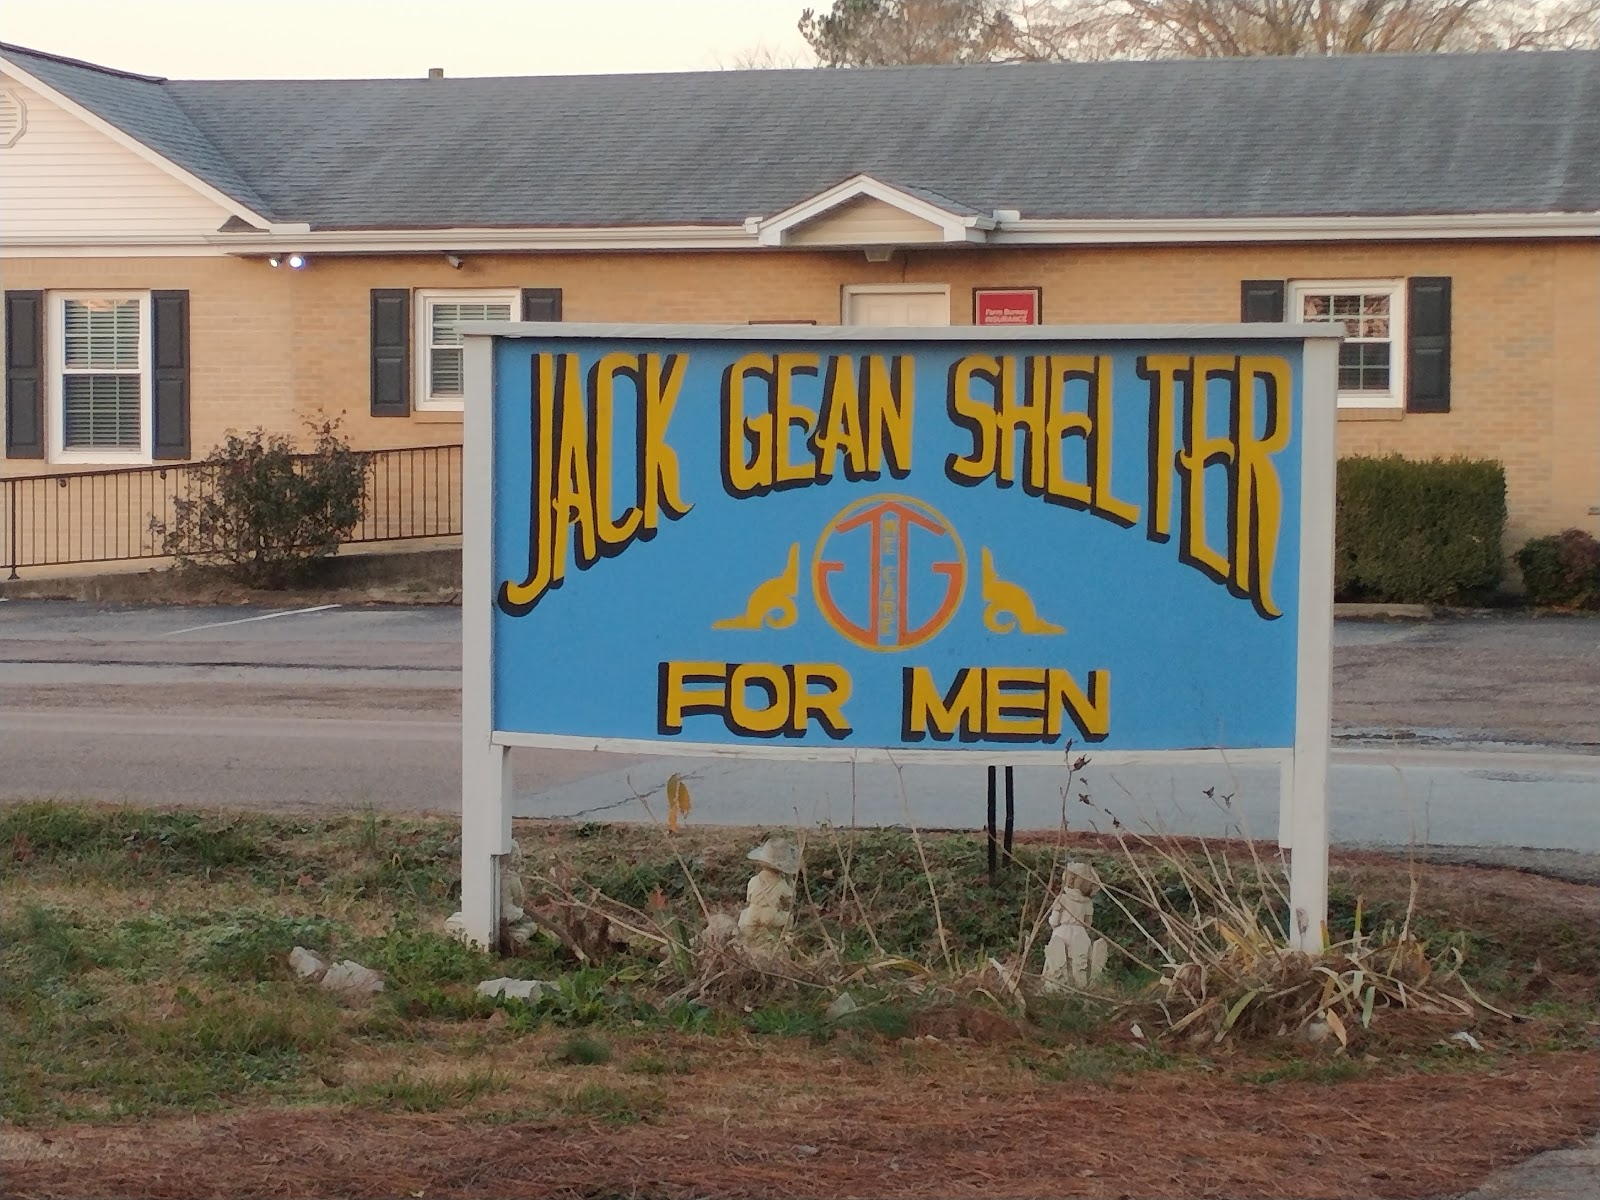 Care of Savannah - Jack Gean Shelter for Men